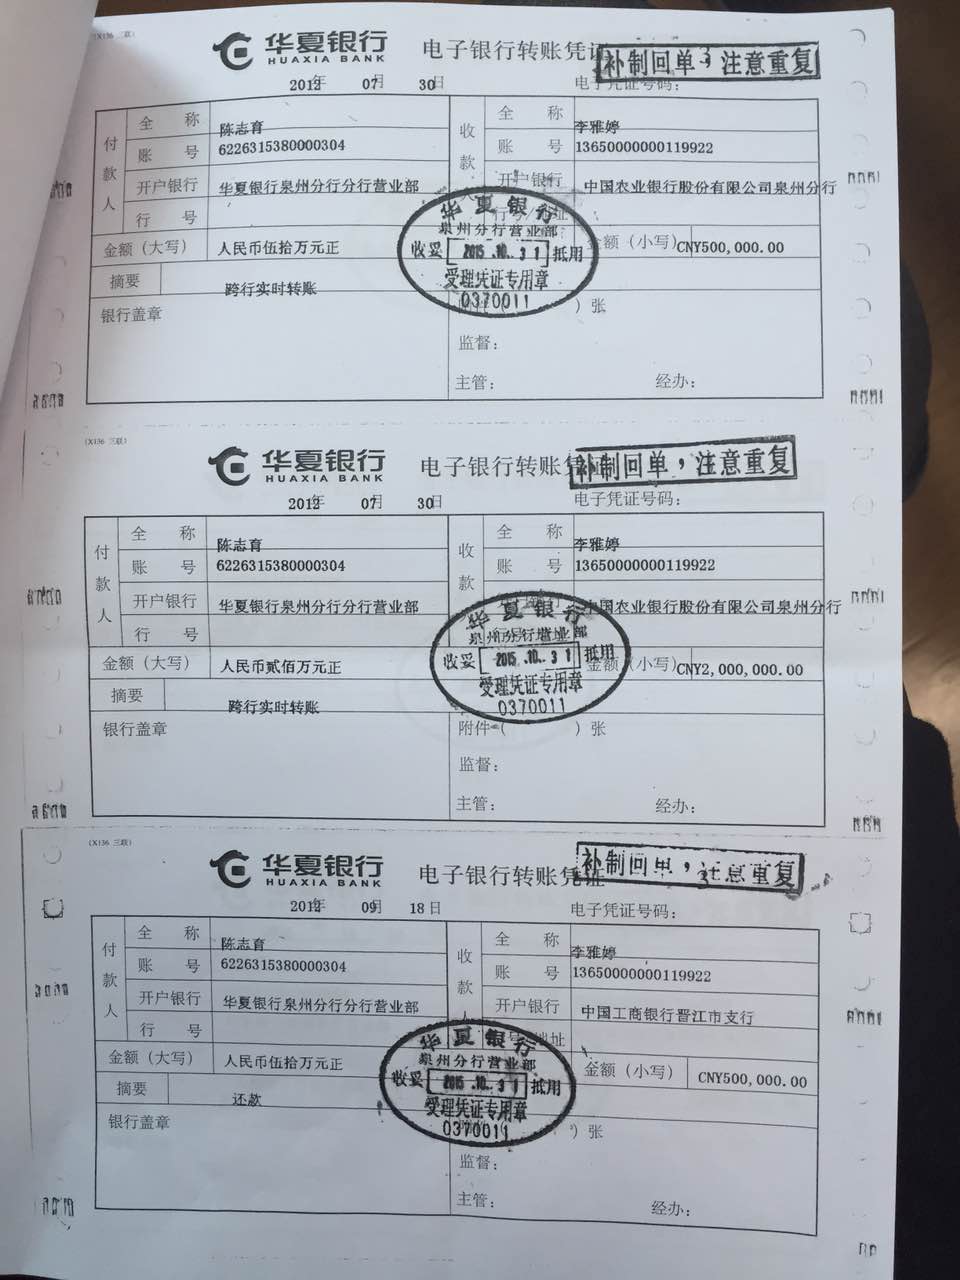 华夏银行14张假的转账凭证出现在法庭上证明